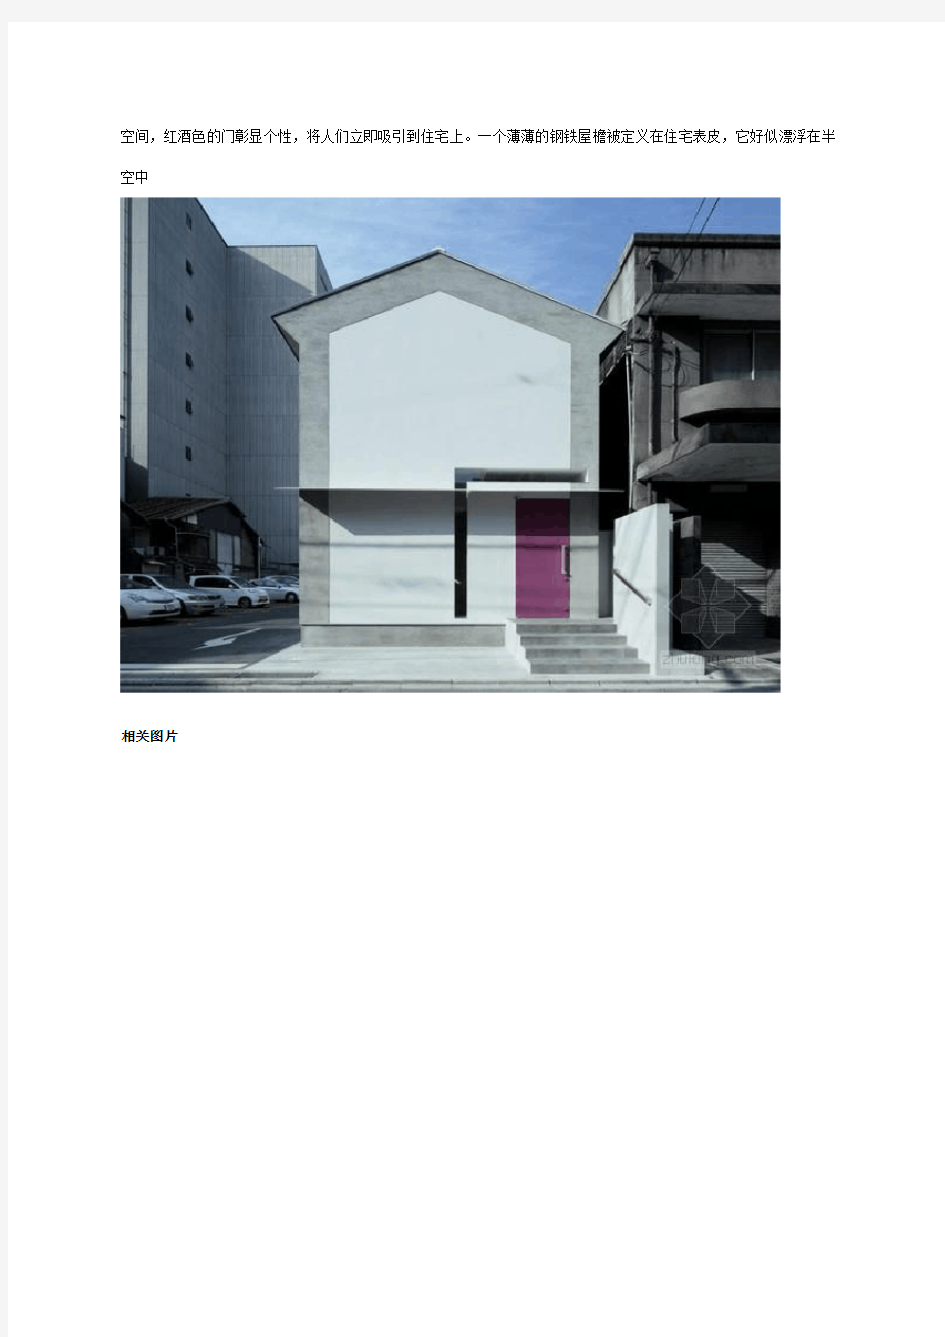 个人整理的日本住宅设计方面资料